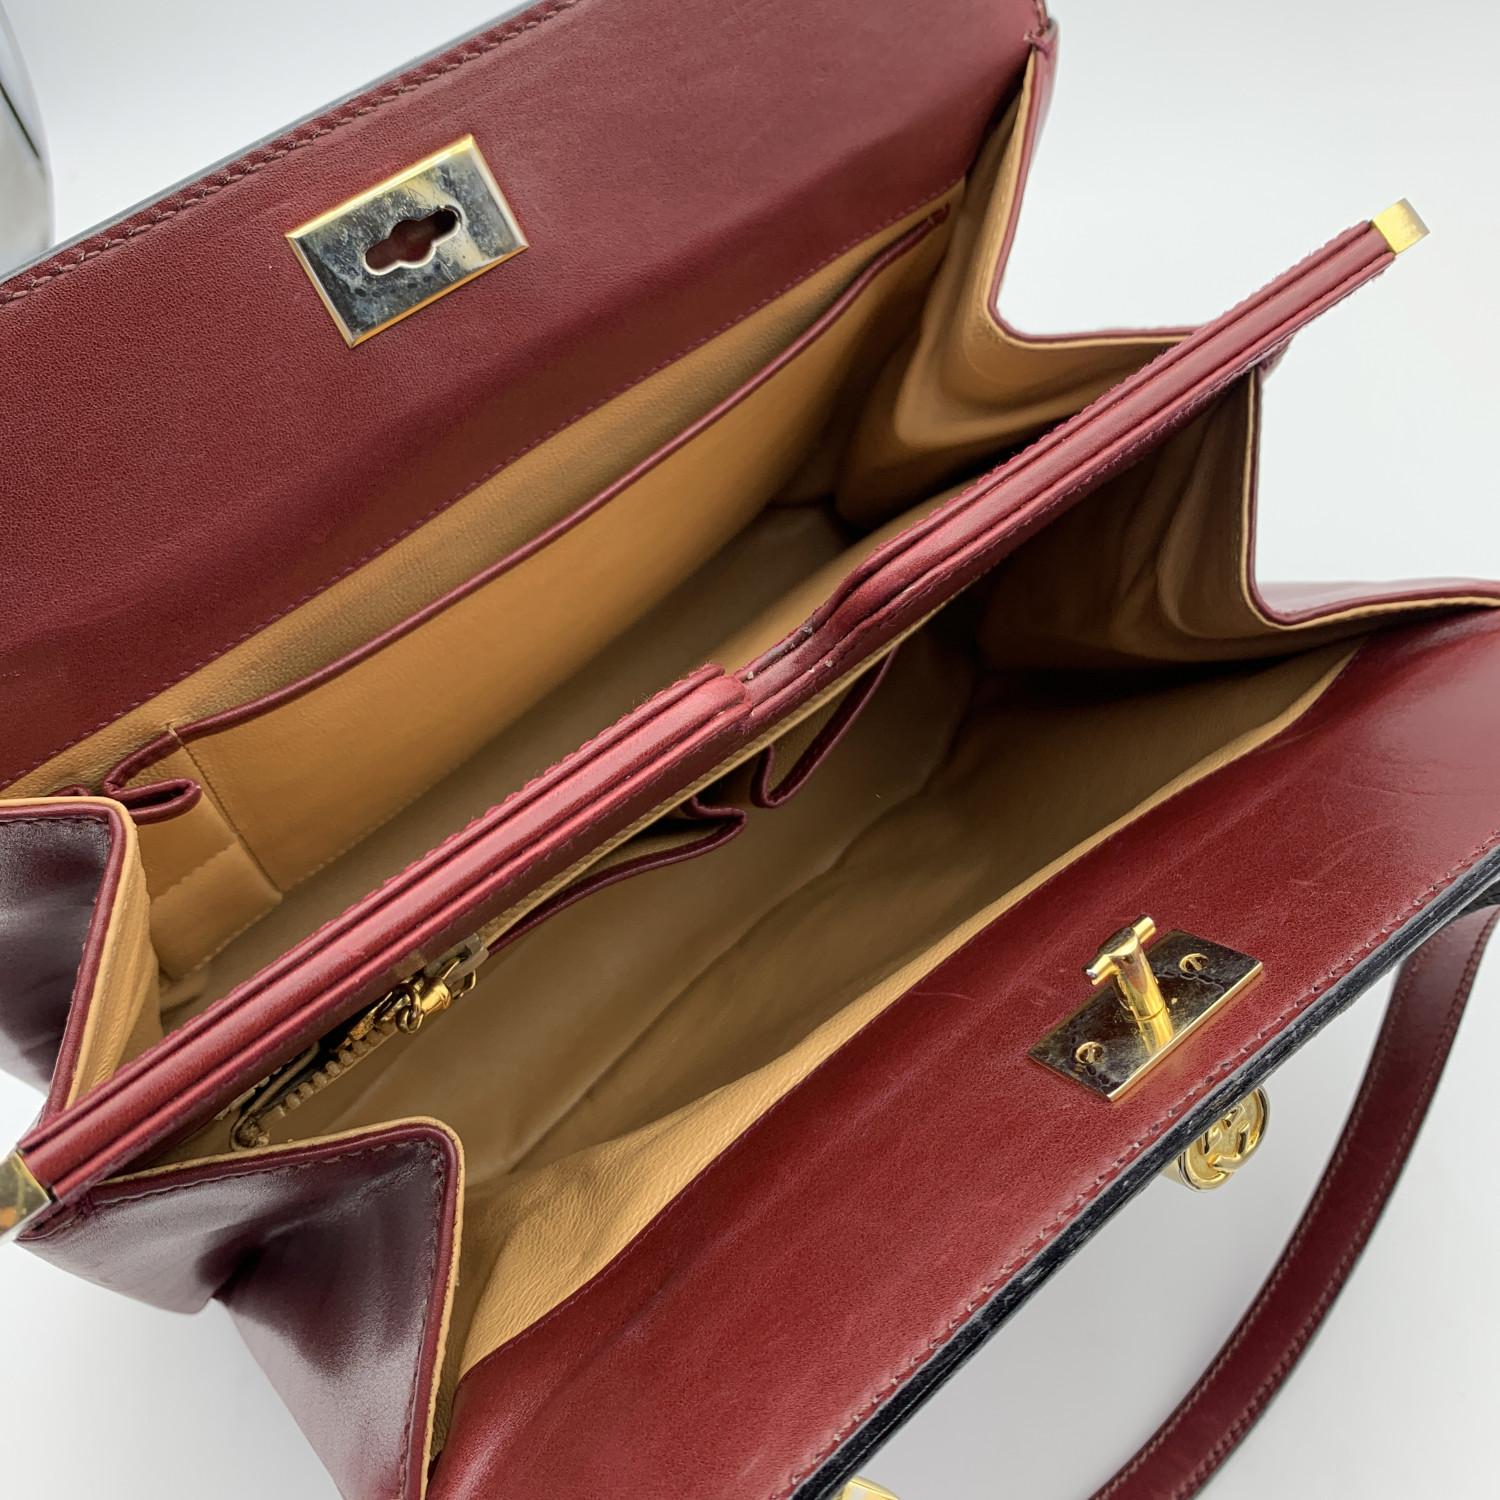 Gucci Vintage Burgundy Leather Handbag Satchel Top Handles Bag 1